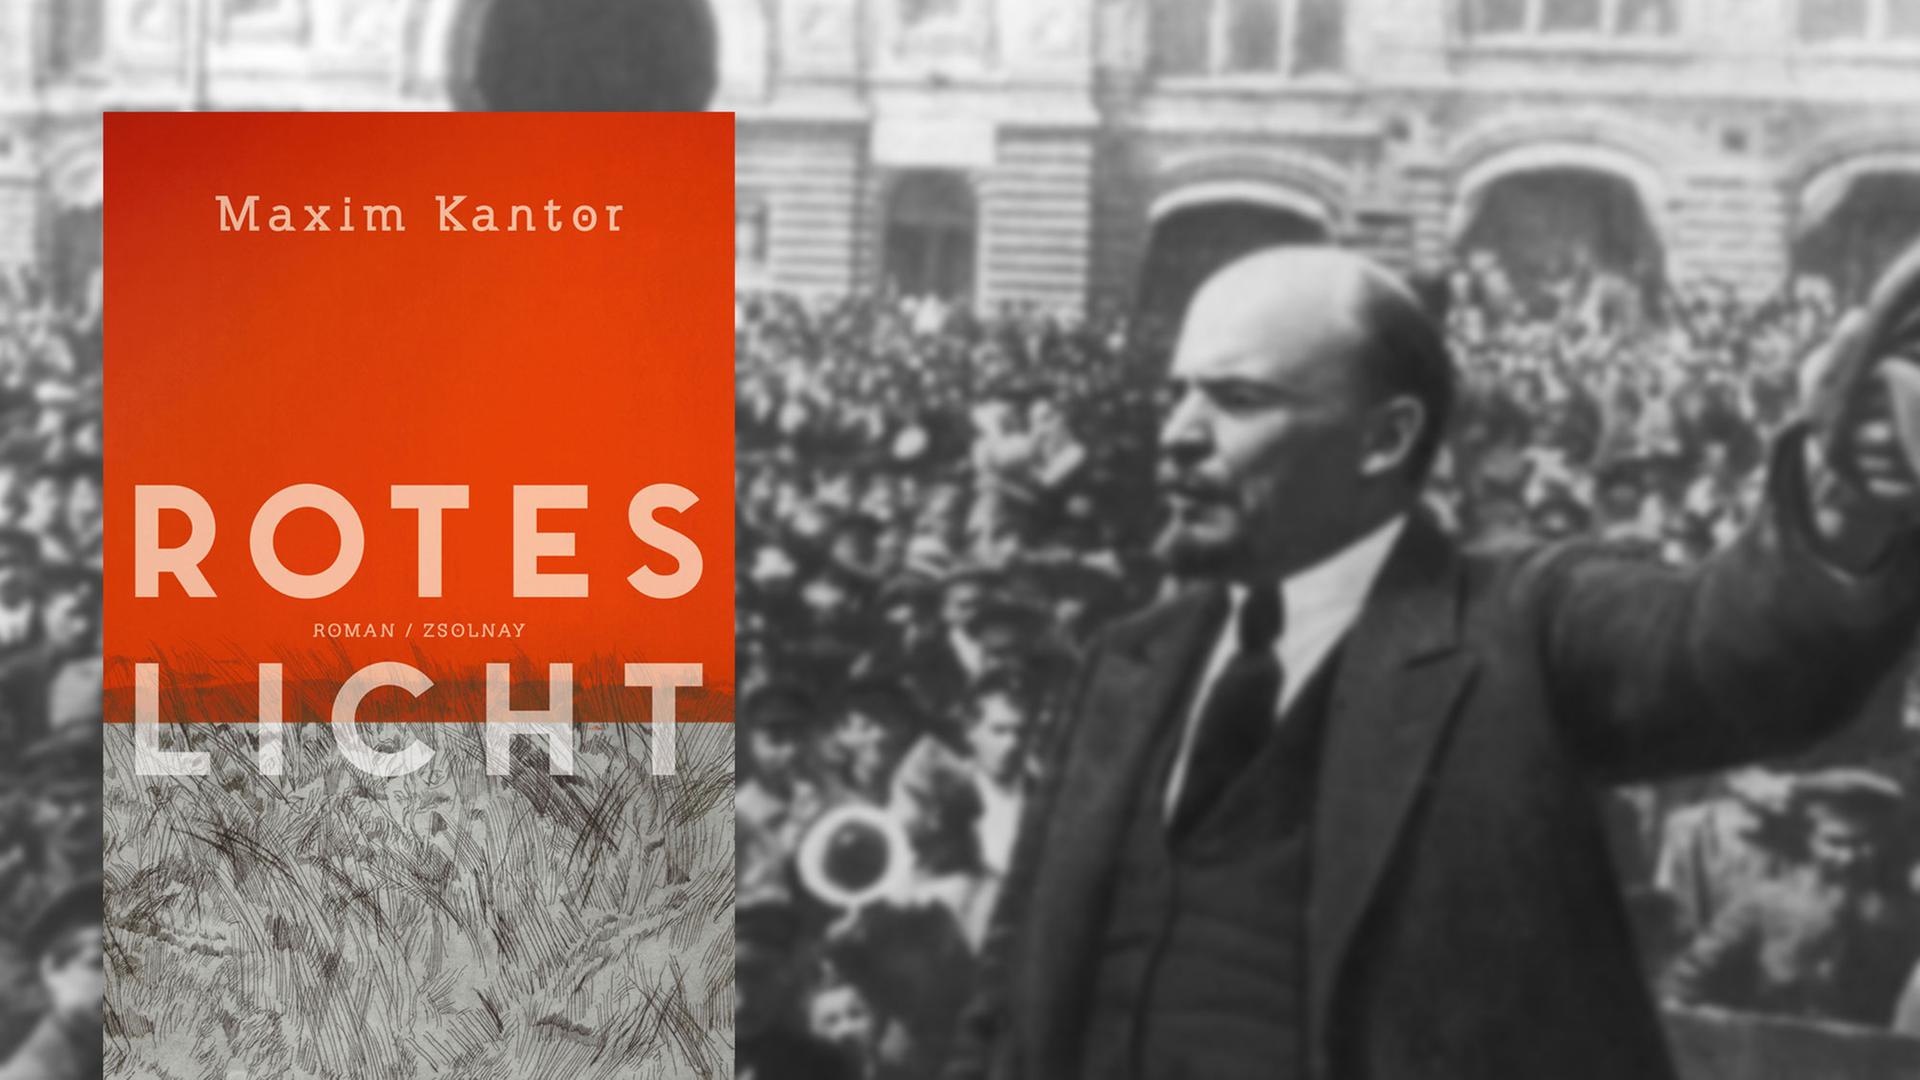 Buchcover "Rotes Licht" von Maxim Kantor, im Hintergrund Lenin im Oktober 1917 auf dem Roten Platz in Moskau